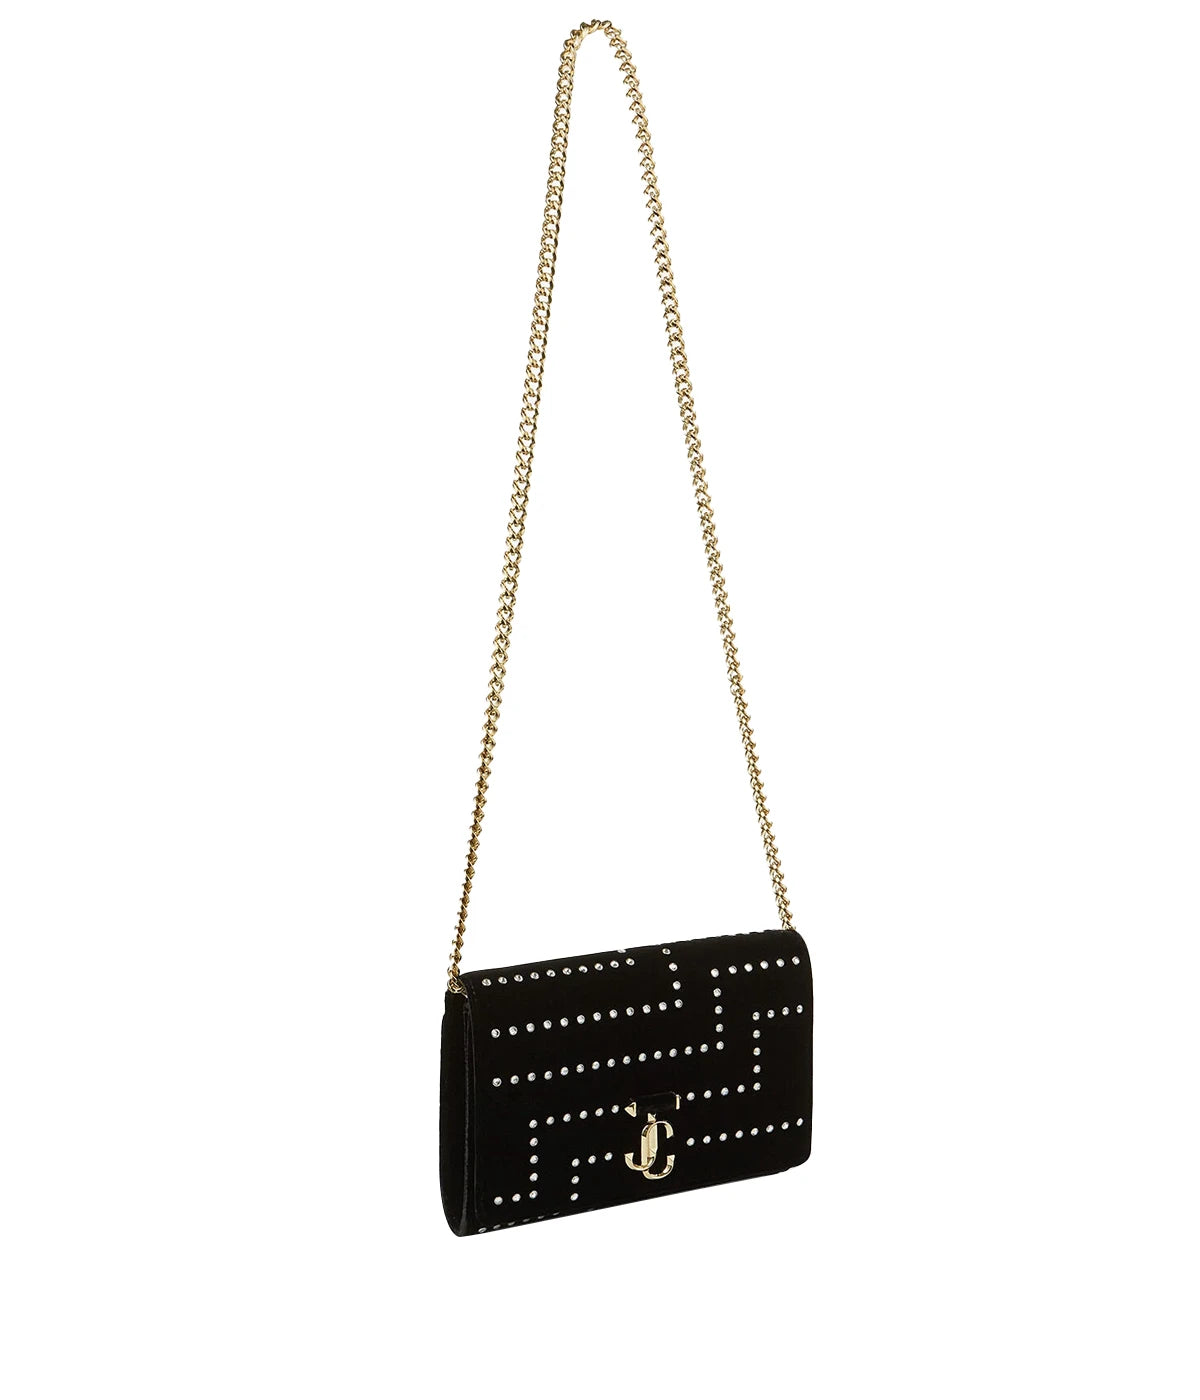 Varenne Clutch Bag in Black & Light Gold